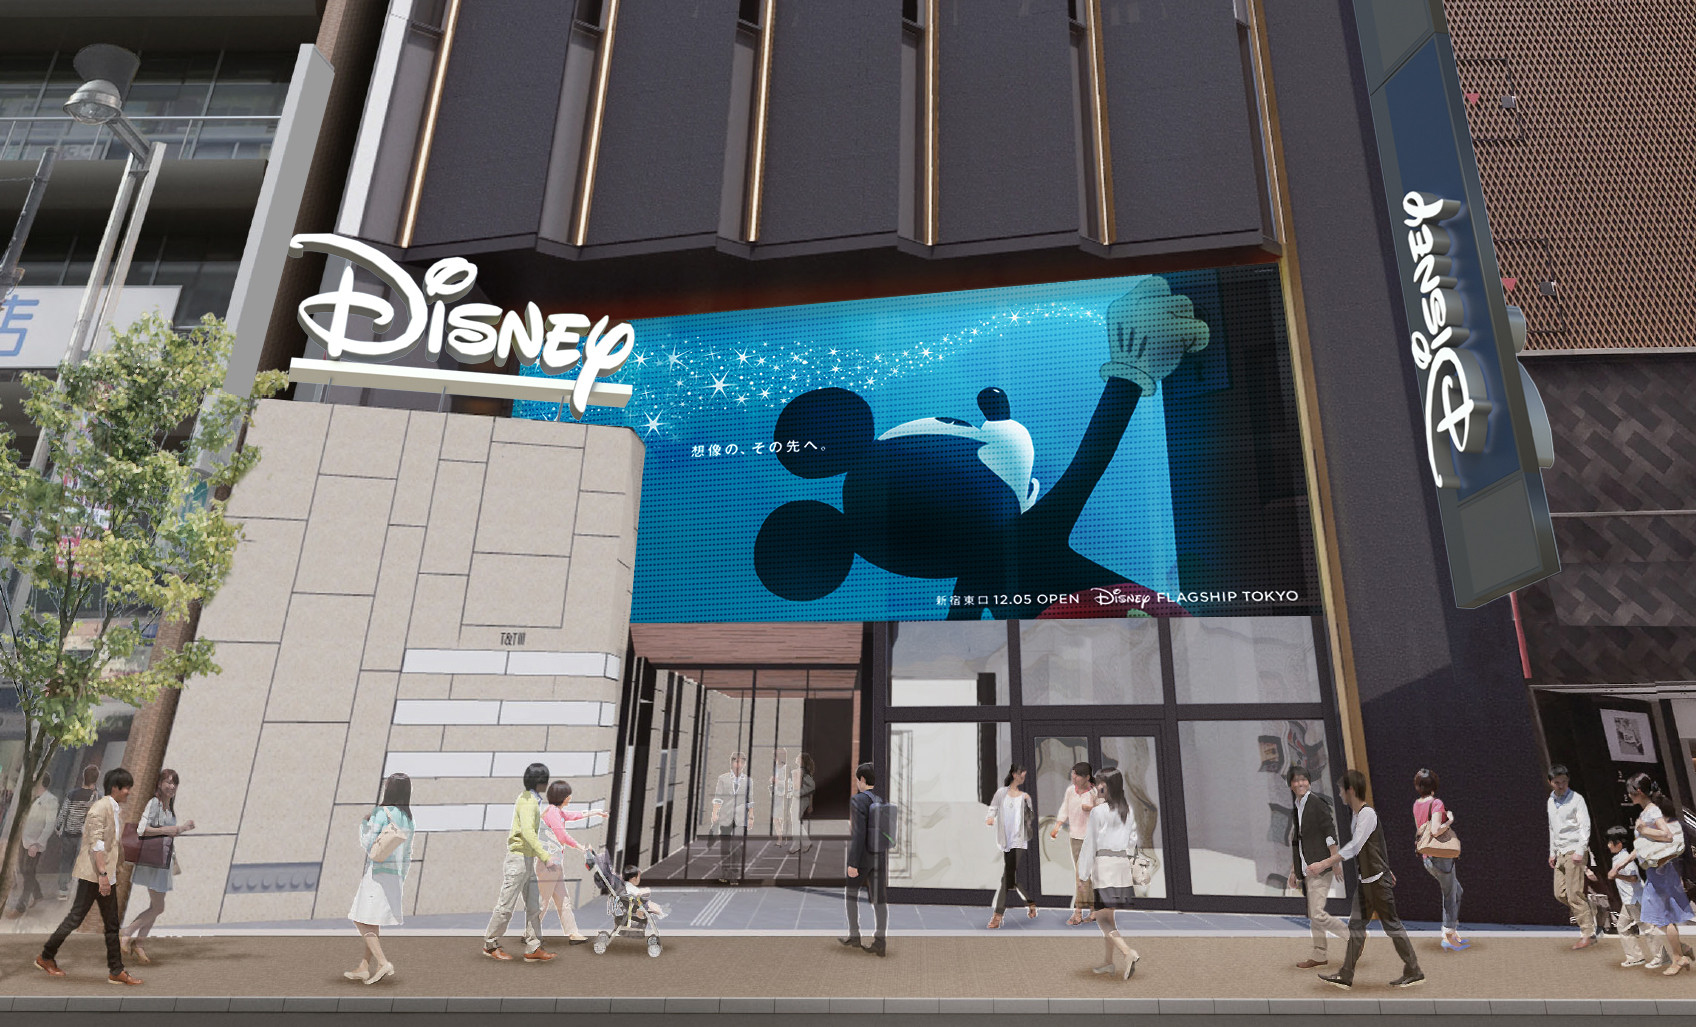 ディズニーフラッグシップ東京 日本最大のディズニーストアが新宿に12 5オープン 新店舗情報まとめ